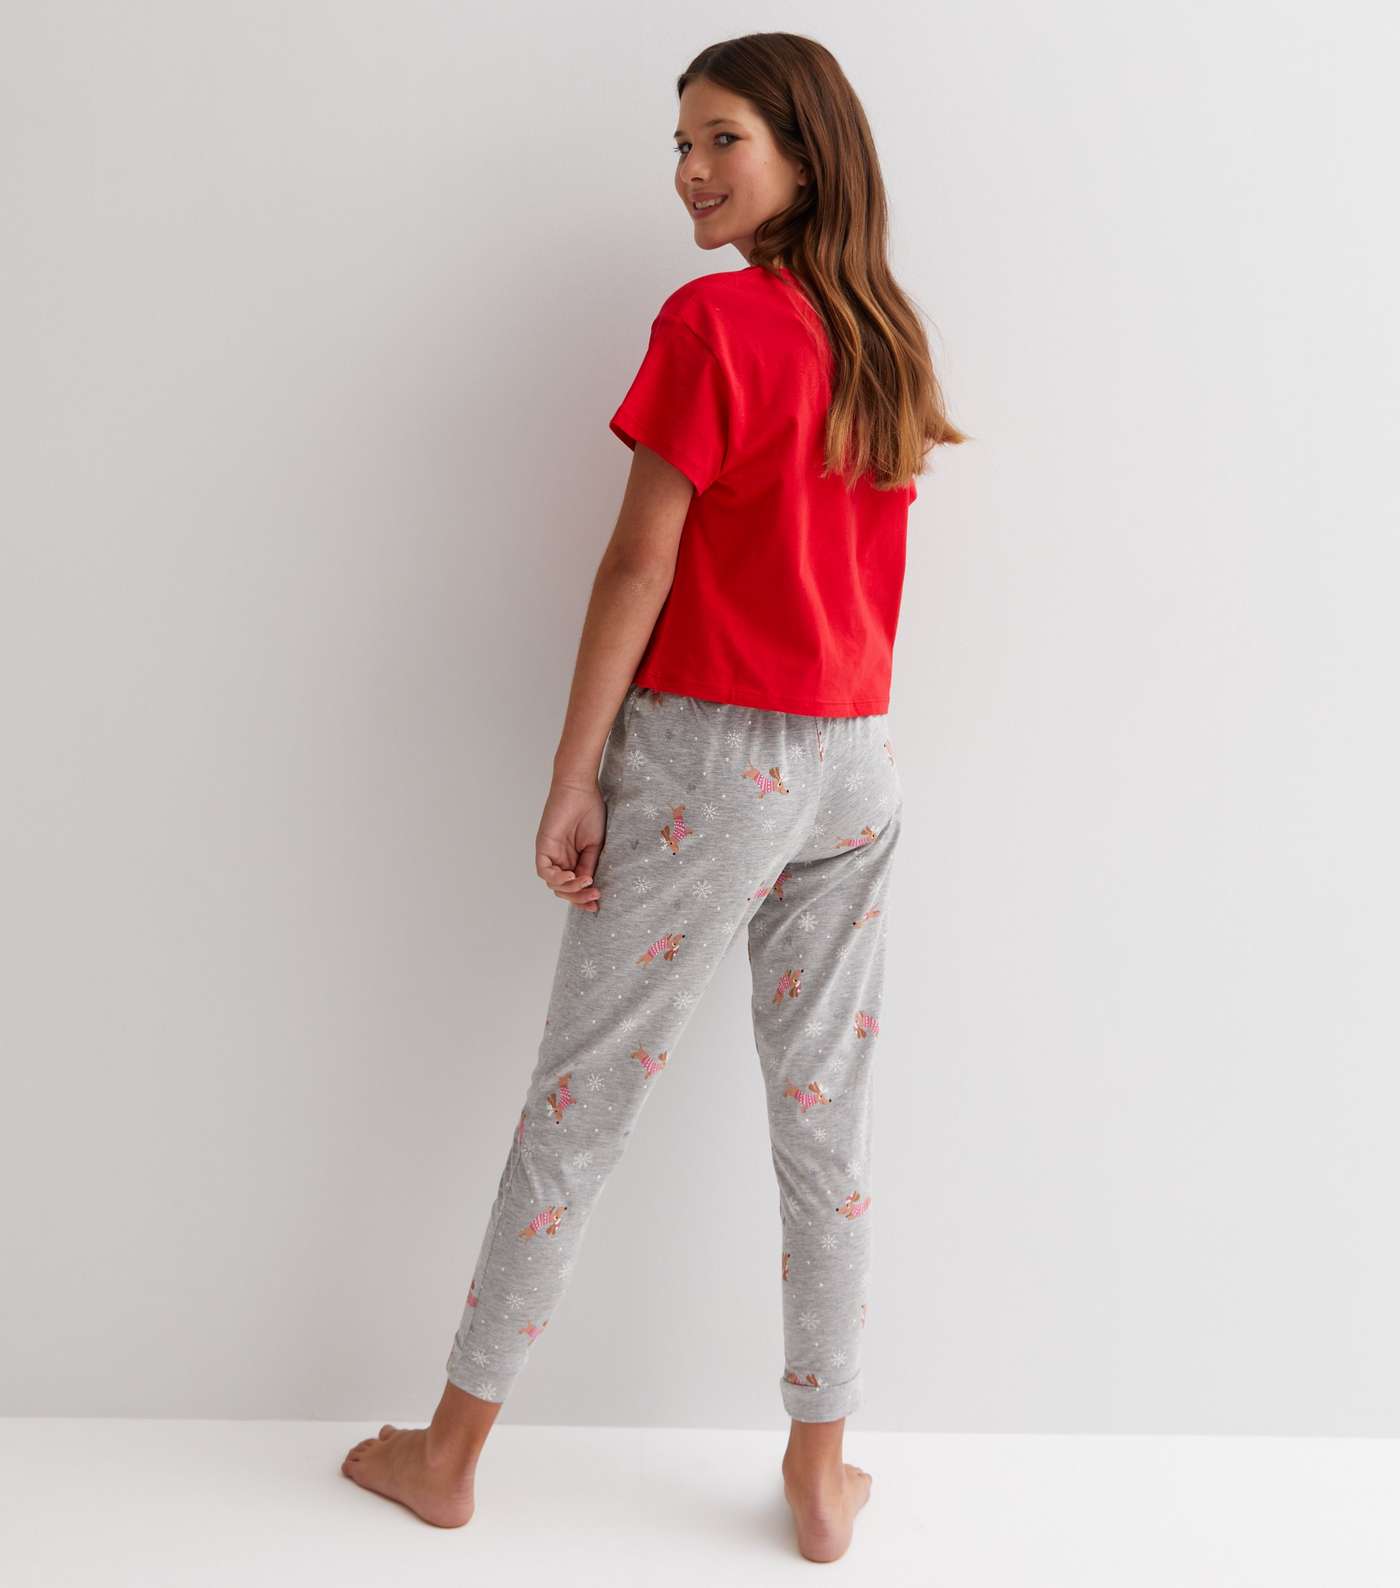 Girls Red Jogger Pyjama Set with Christmas Dog Print Image 4